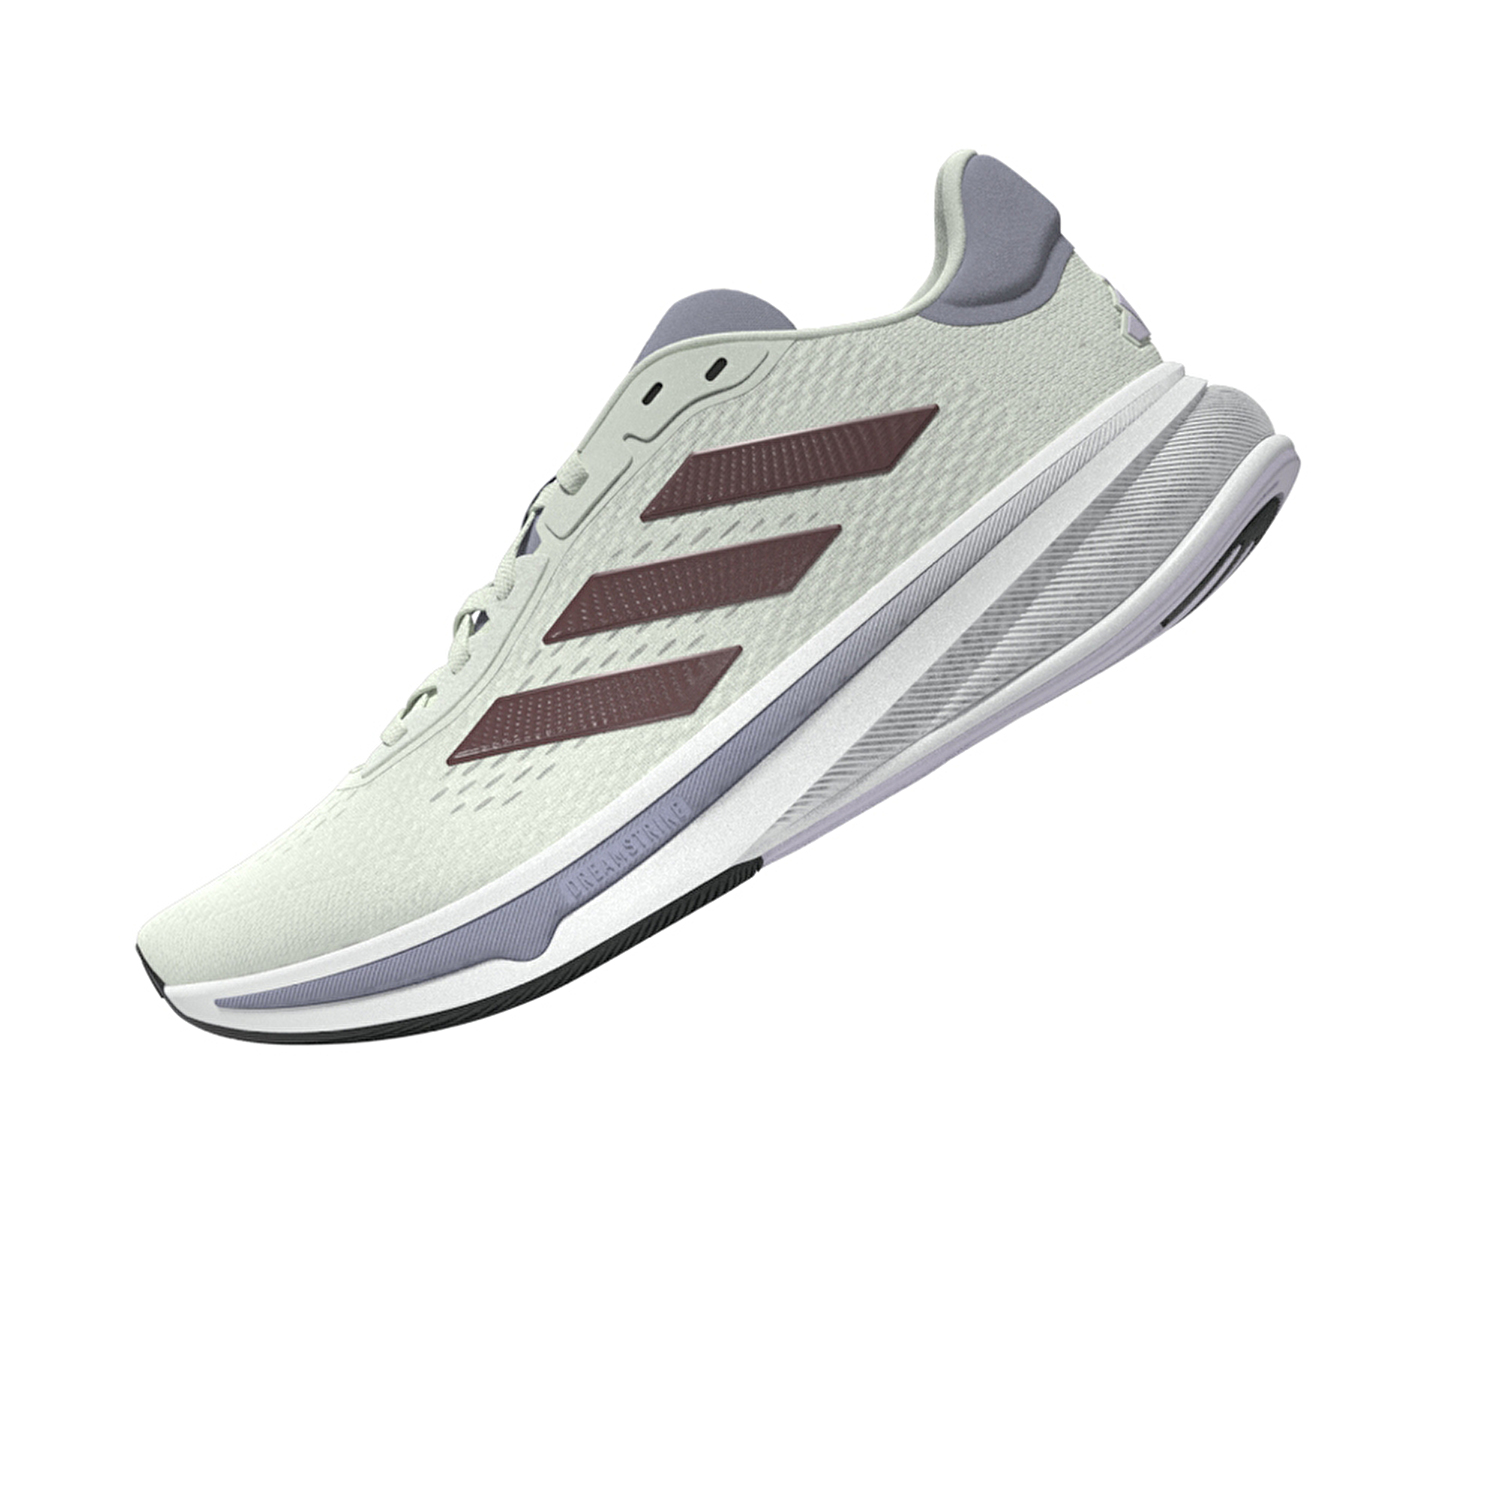 Adidas Response Super W Kadın Koşu Ayakkabısı